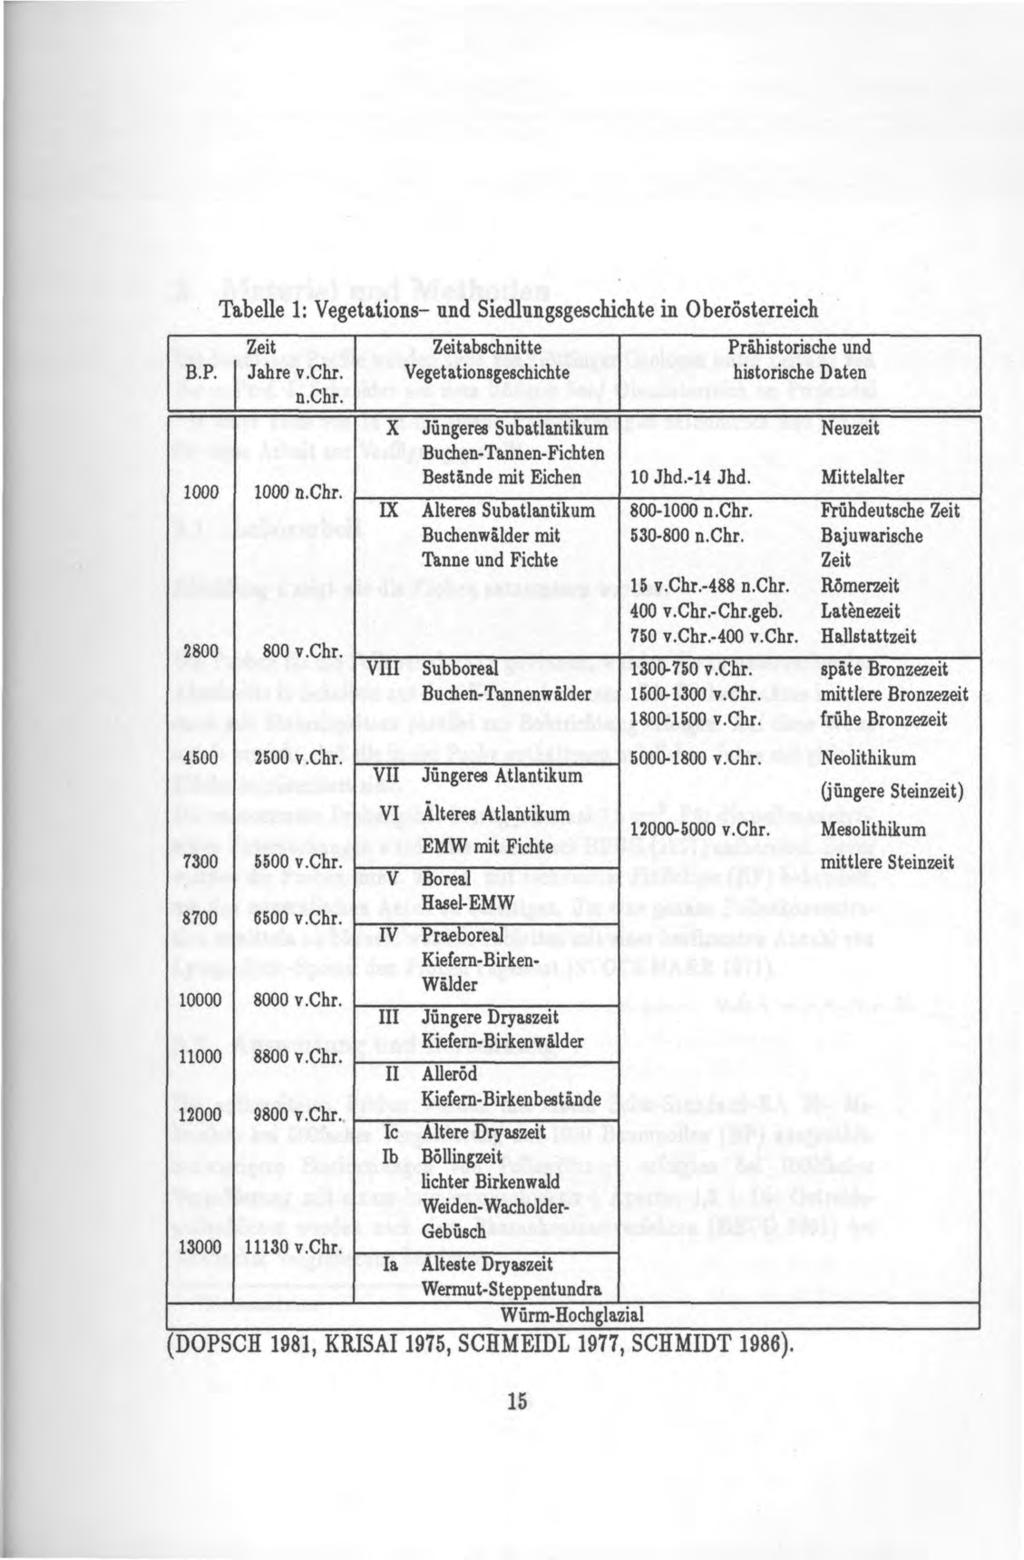 Tabelle 1: Vegetations- und Siedlungsgeschichte in Obeiösterreich B.P. Zeit Jahre v.chr. n.chr. Zeitabschnitte Vegetationsgeschichte Prähistorische und historische Daten 1000 2800 1000 n.chr. 800 v.